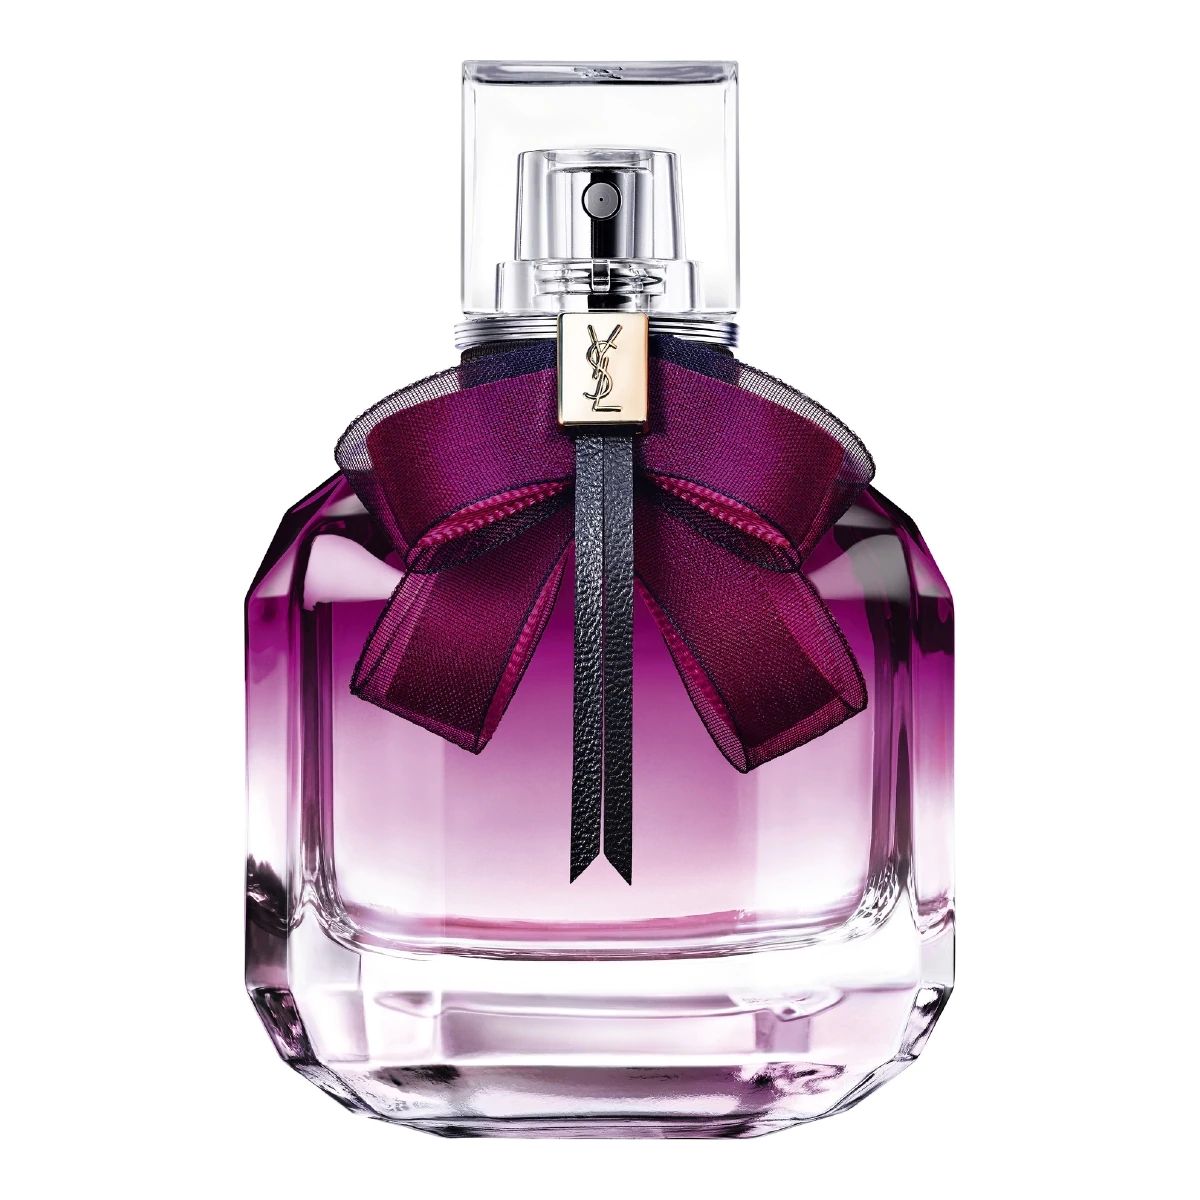 Mon Paris Intensement Yves Saint Laurent parfum - un nou parfum de dama